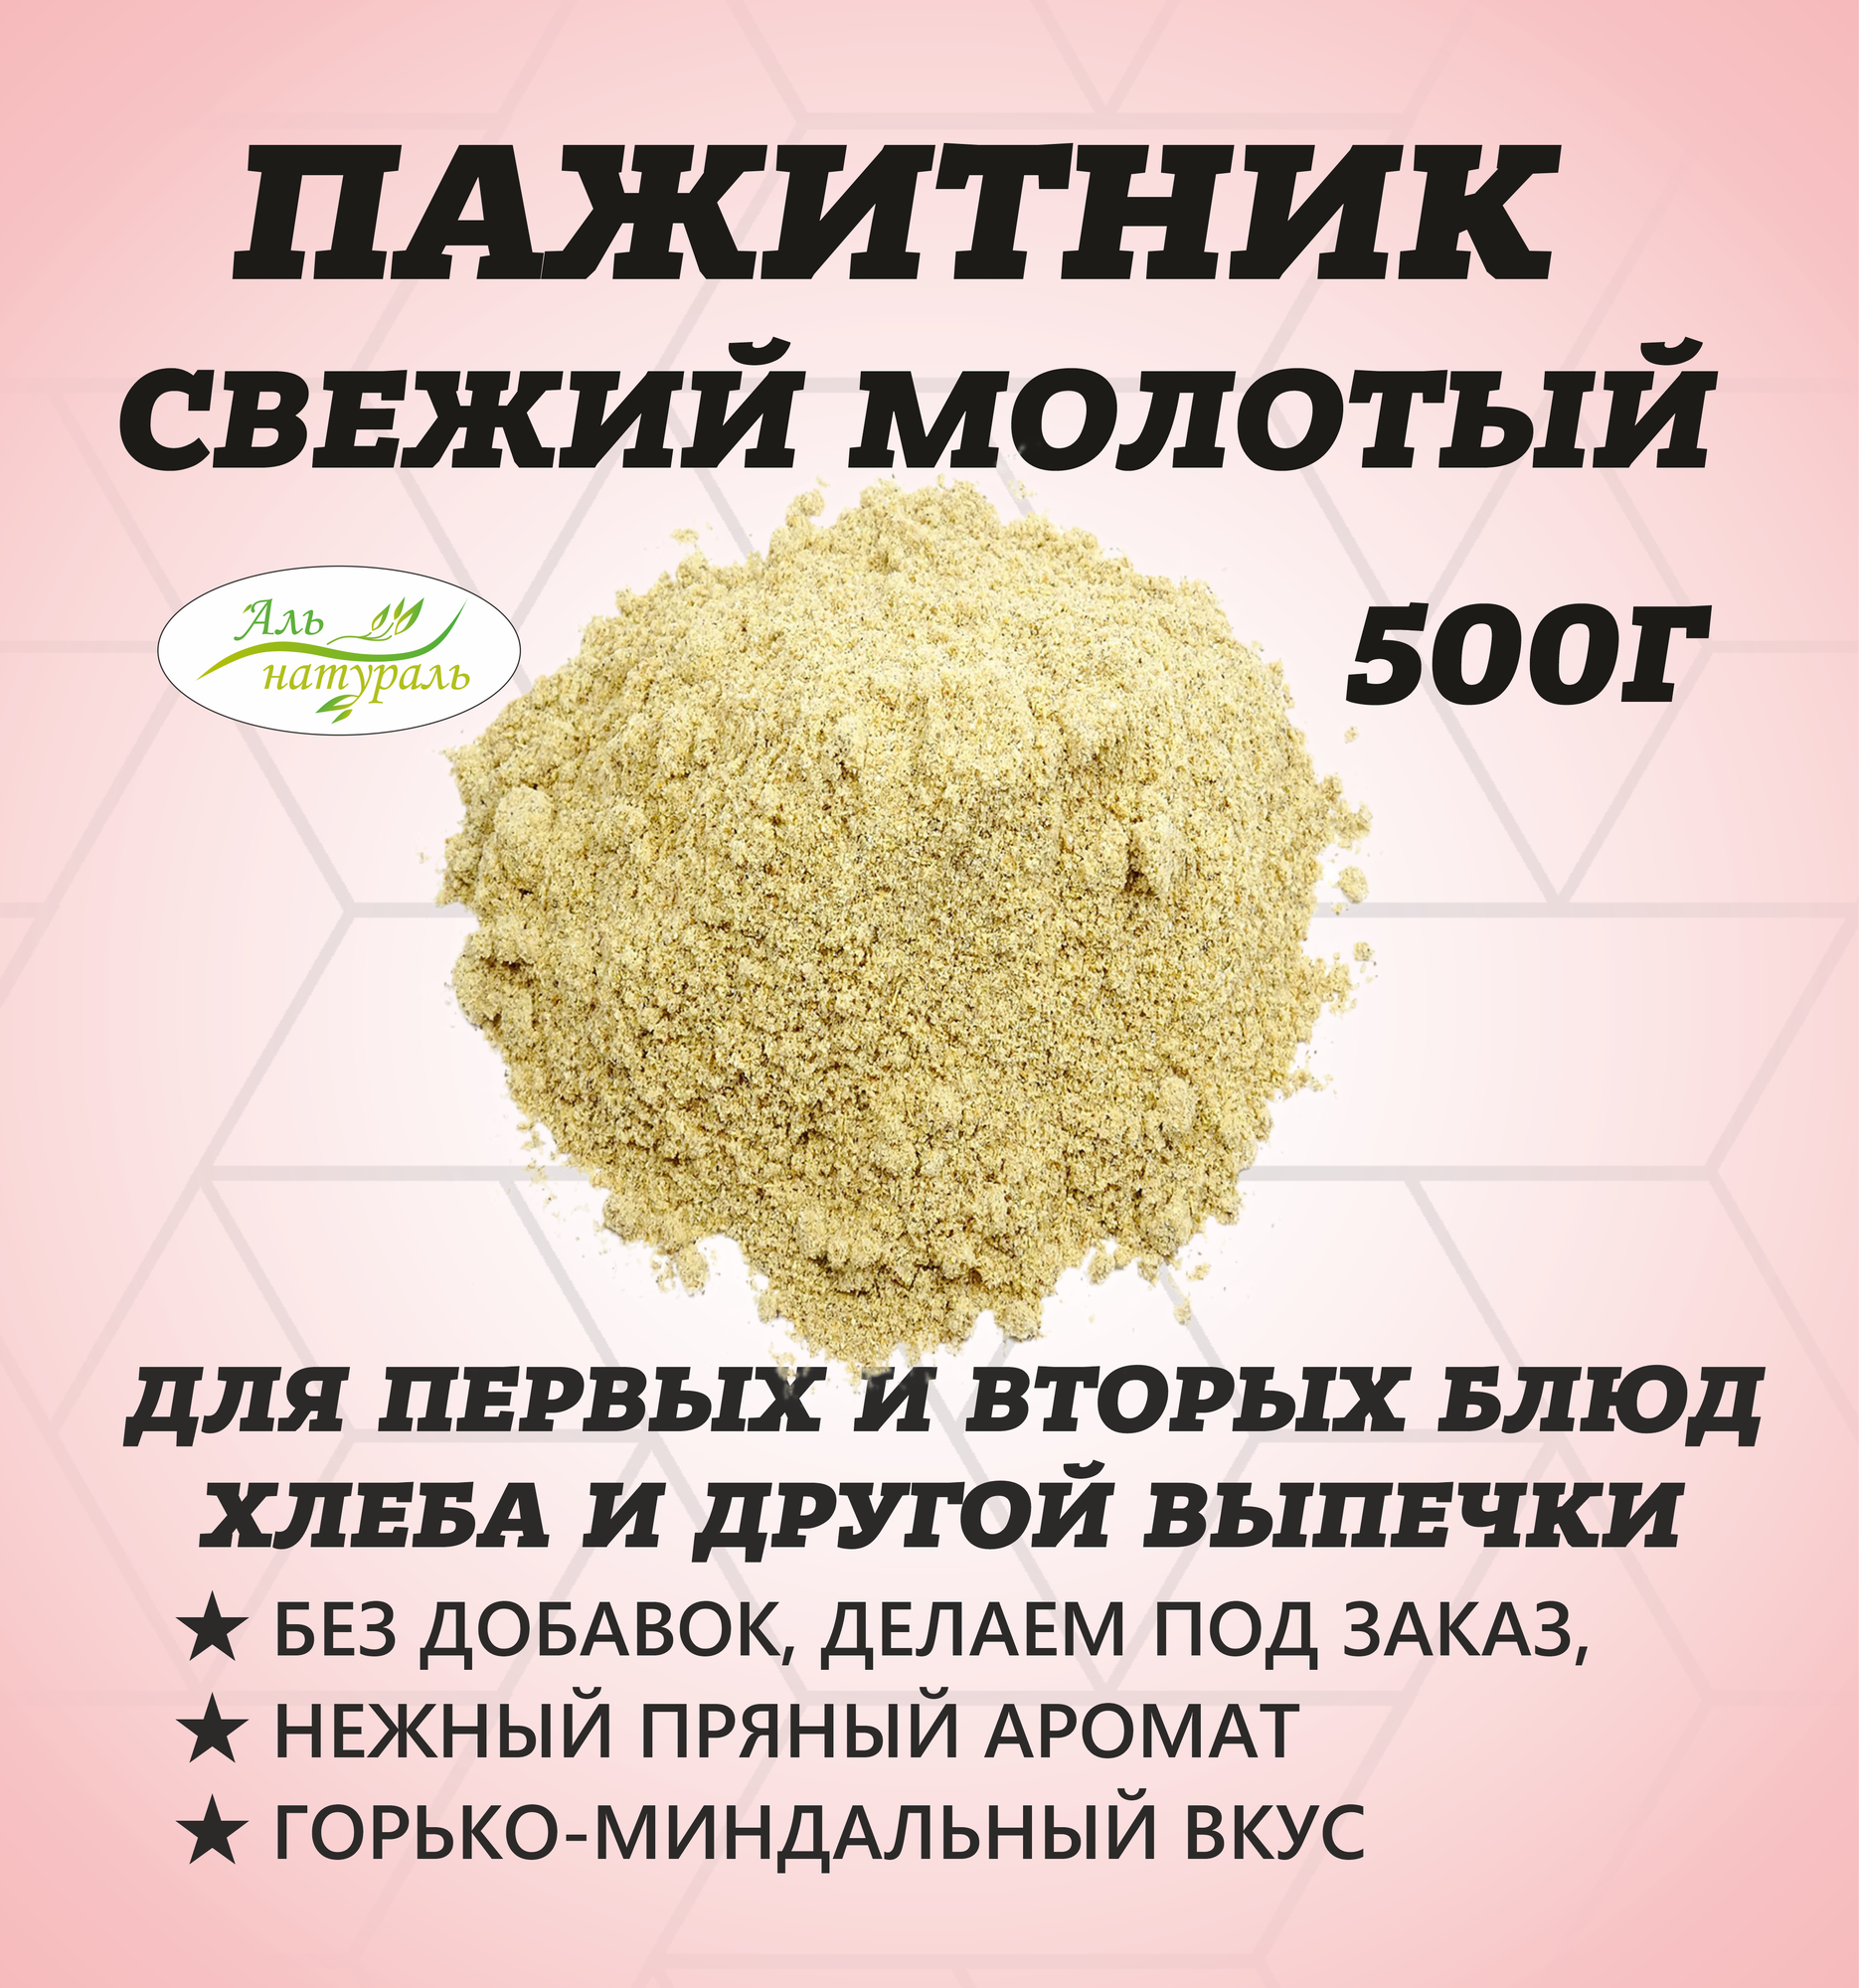 Пажитник семя молотое под заказ, Высший сорт, Россия 500 гр